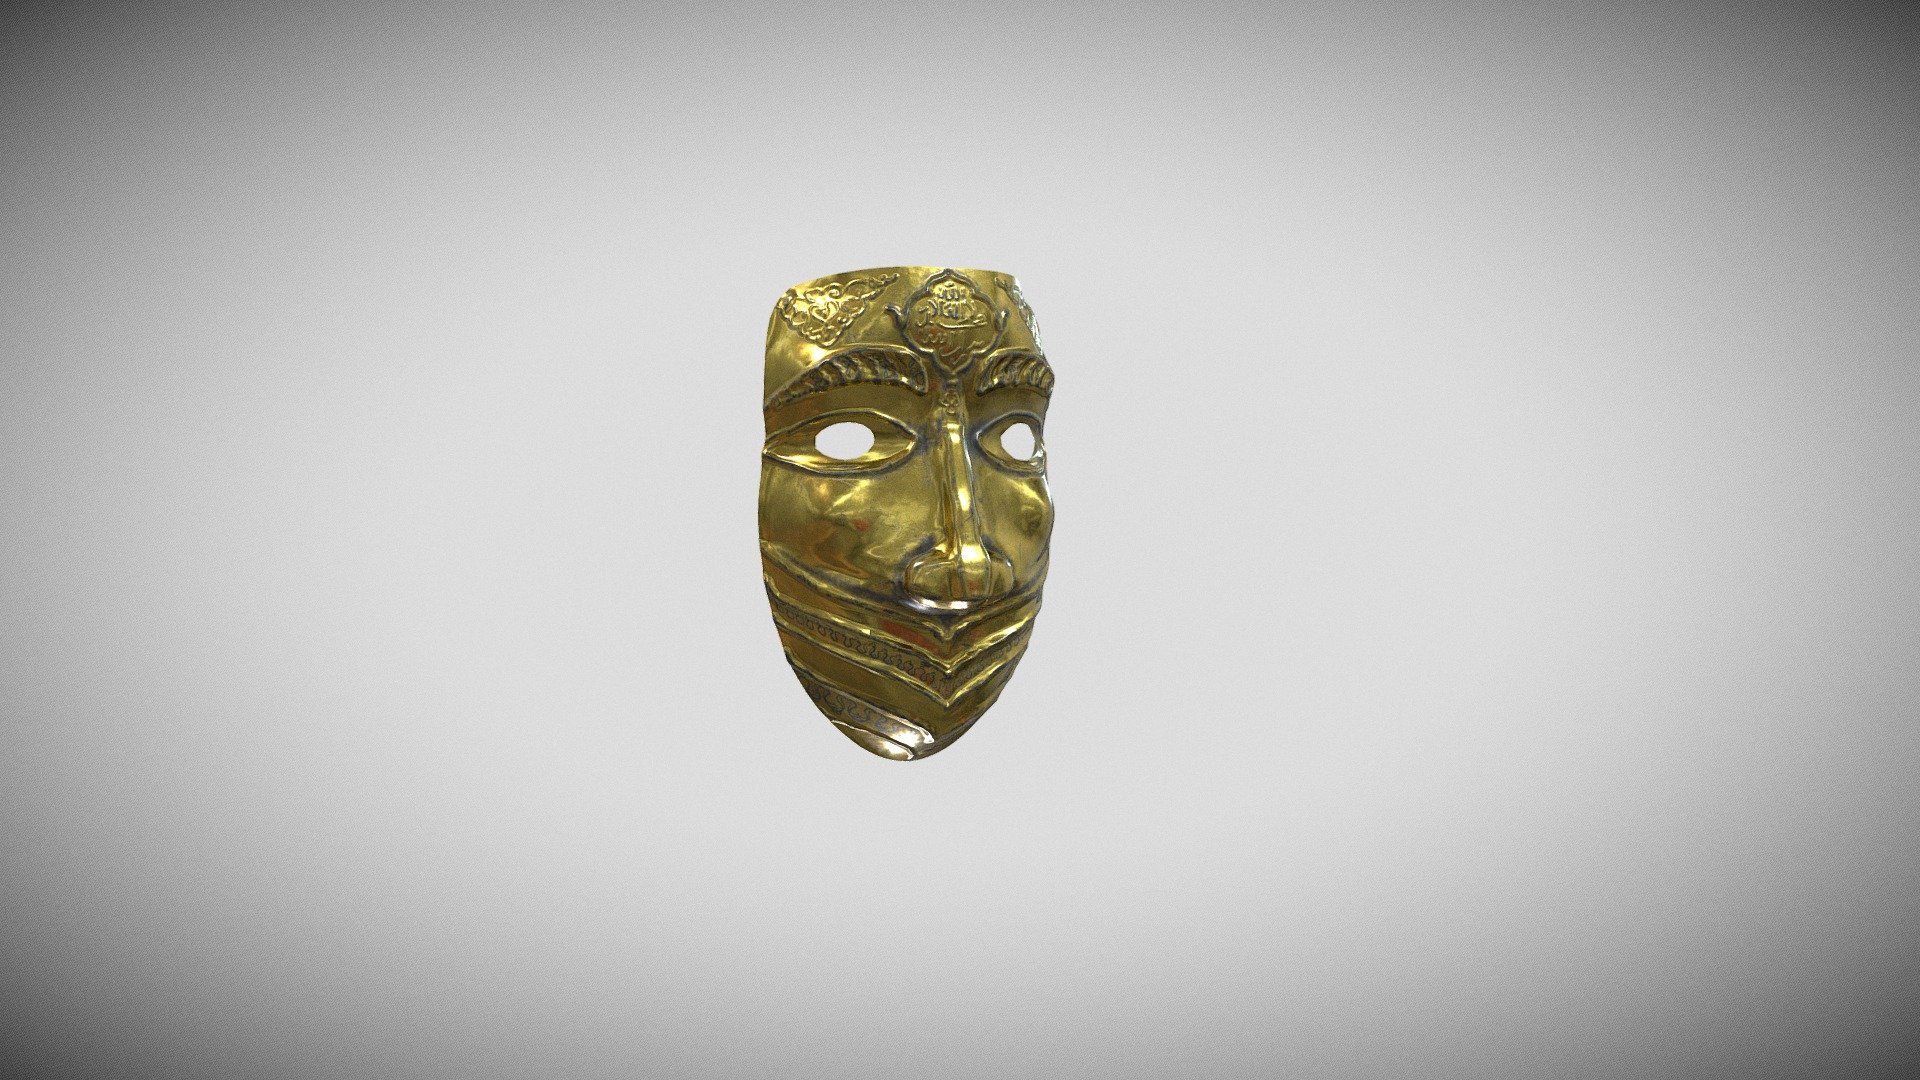 16th Century Crimean Tatar Mask - 3D model by eldar.yakub 3d model